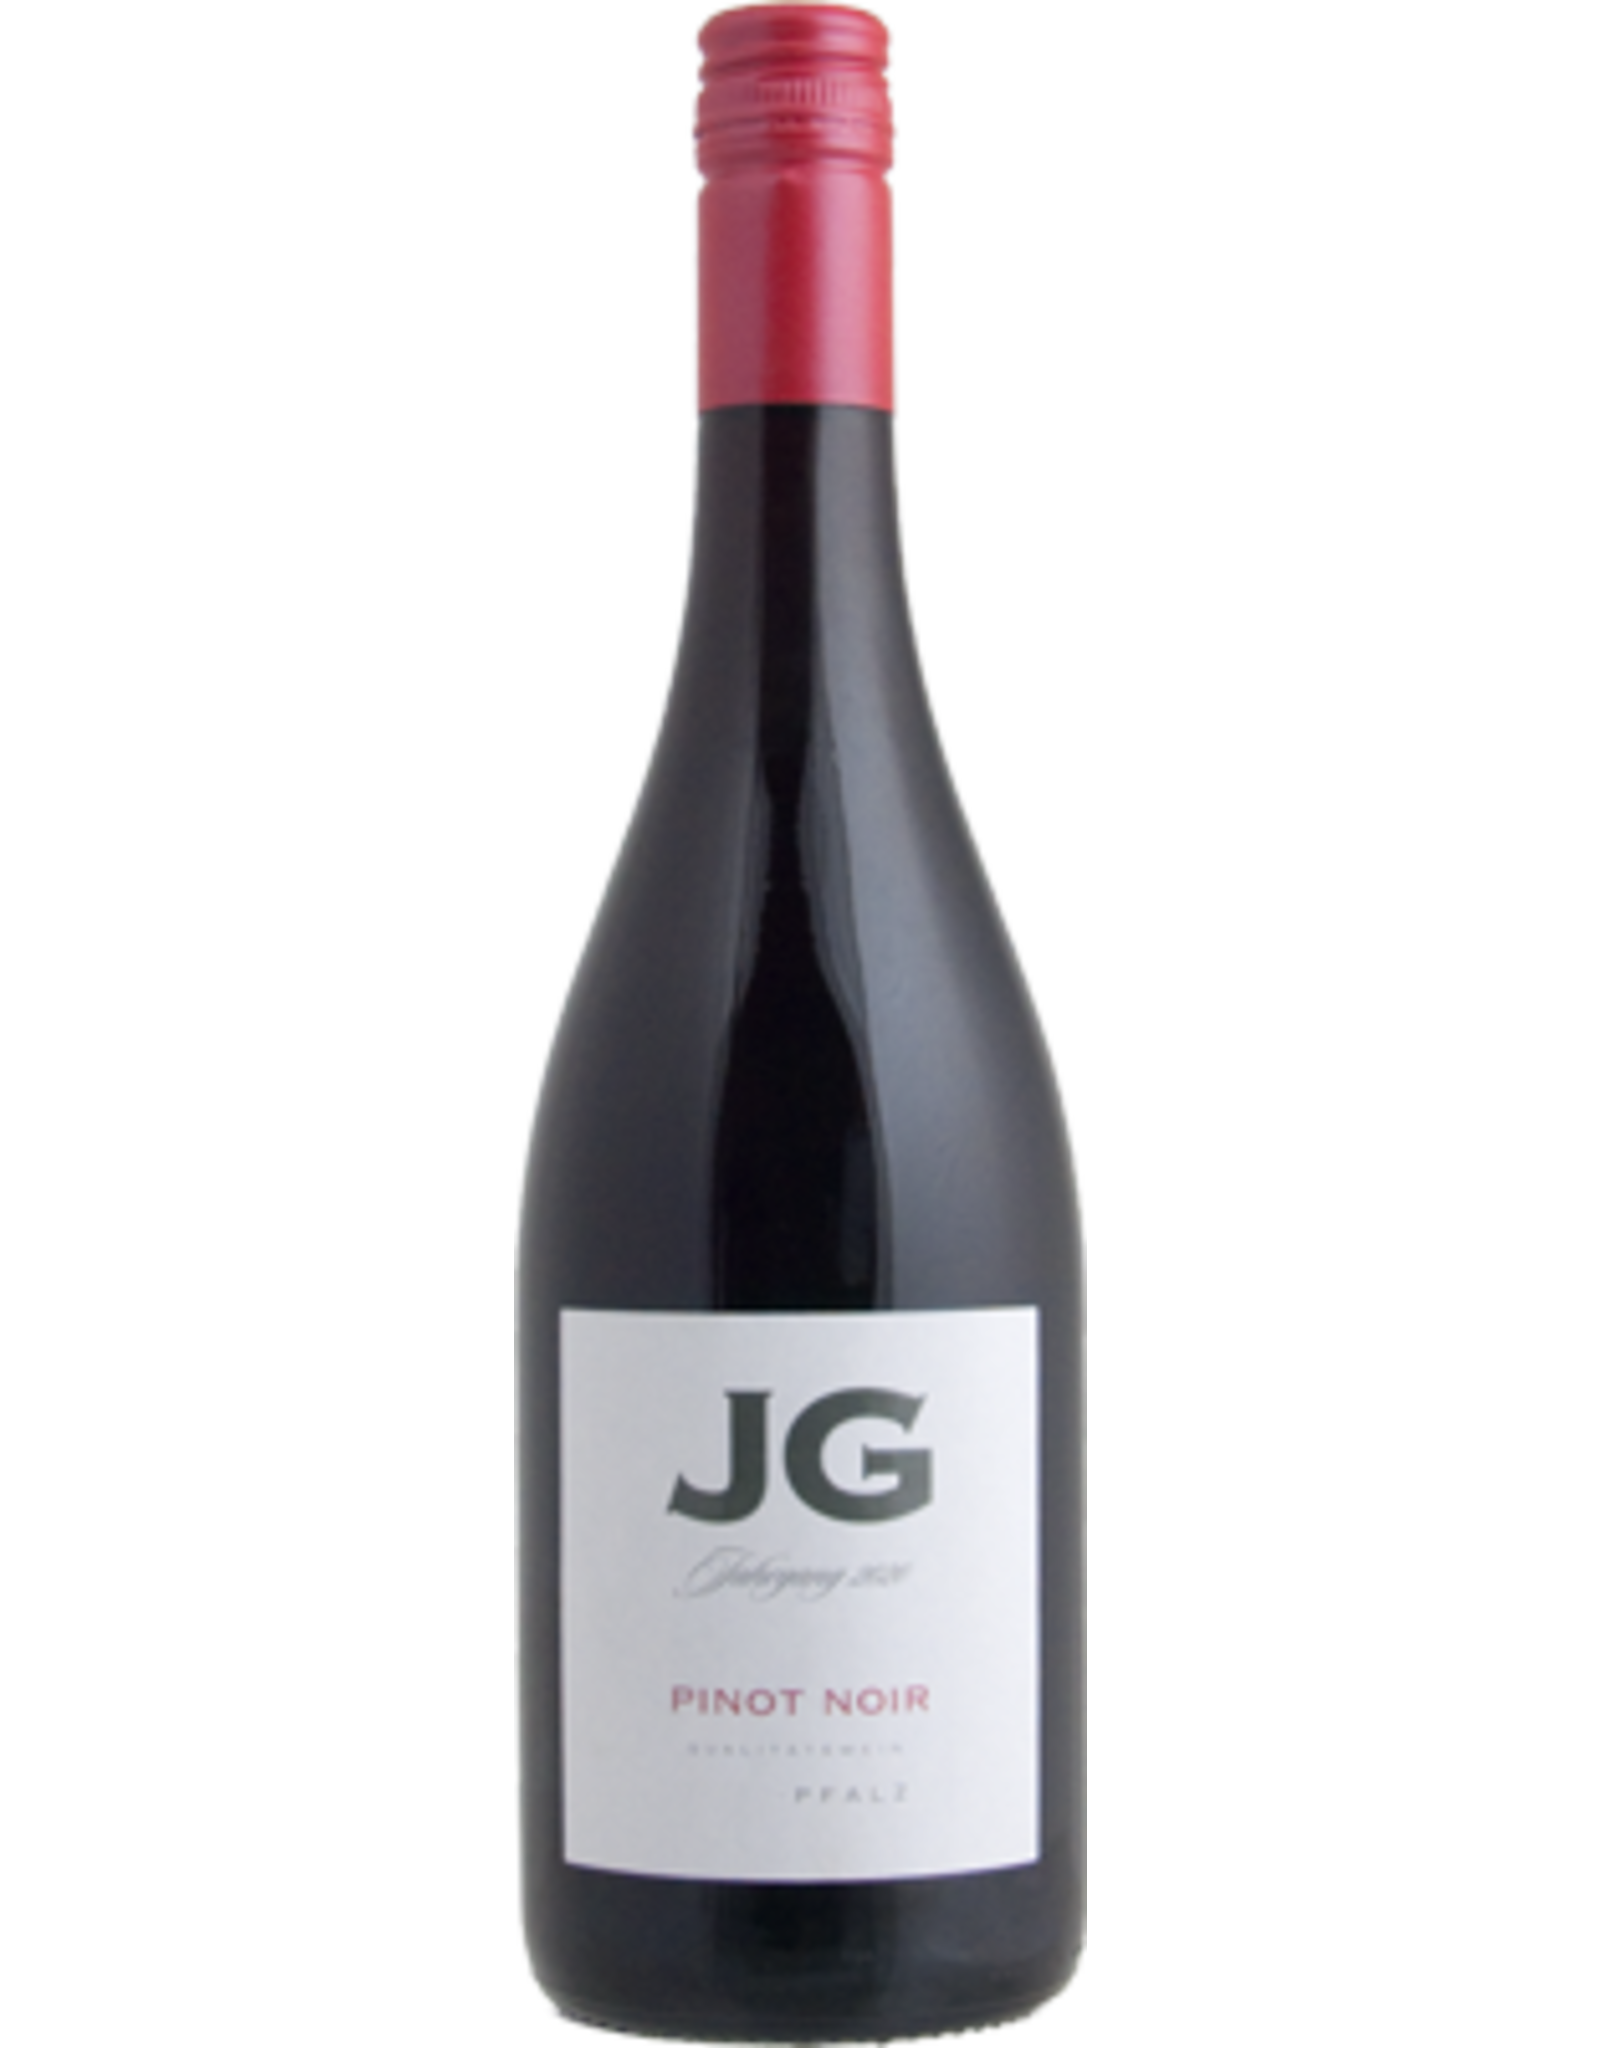 JG Pinot Noir